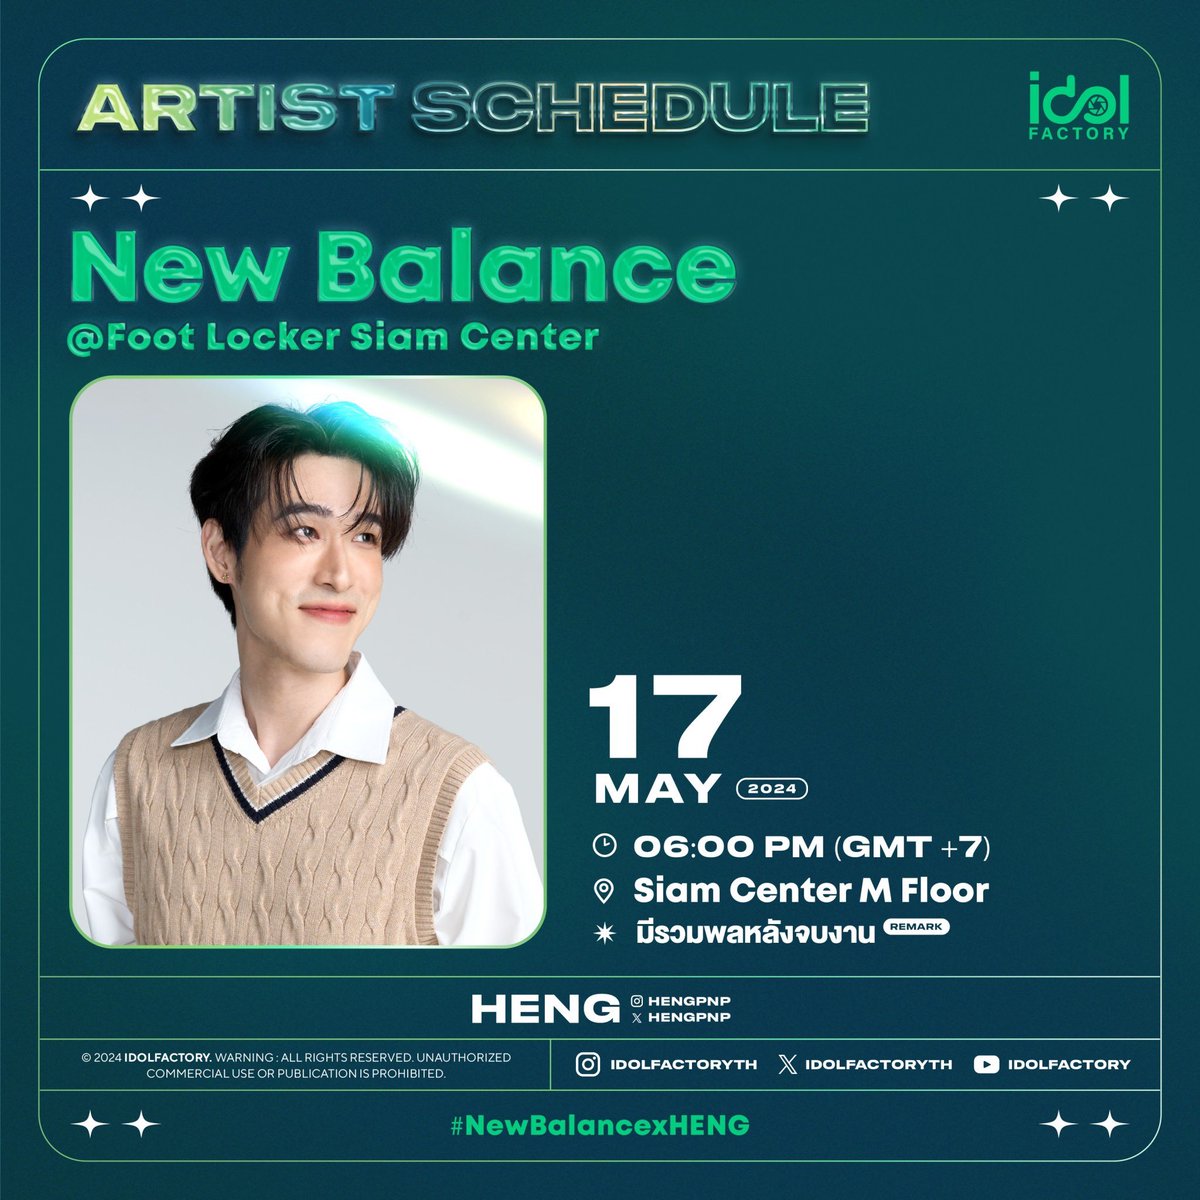 มาพบกับ เฮง อัศวฤทธิ์ ได้ที่งาน  New Balance @ Foot Locker Siam Center

🗓️ 17 พฤษภาคม 2567
⏰ 6.00 PM 
📍Siam Center M Floor

📌Start Trending 5.50 PM
#️⃣#.NewBalancexHENG

⚠️แฟนๆสามารถให้กำลังใจบริเวณรอบๆงานได้ 

✅มีรวมพลหลังจบงาน
❌ งดรับของขวัญและของฝาก

#hengpnp…